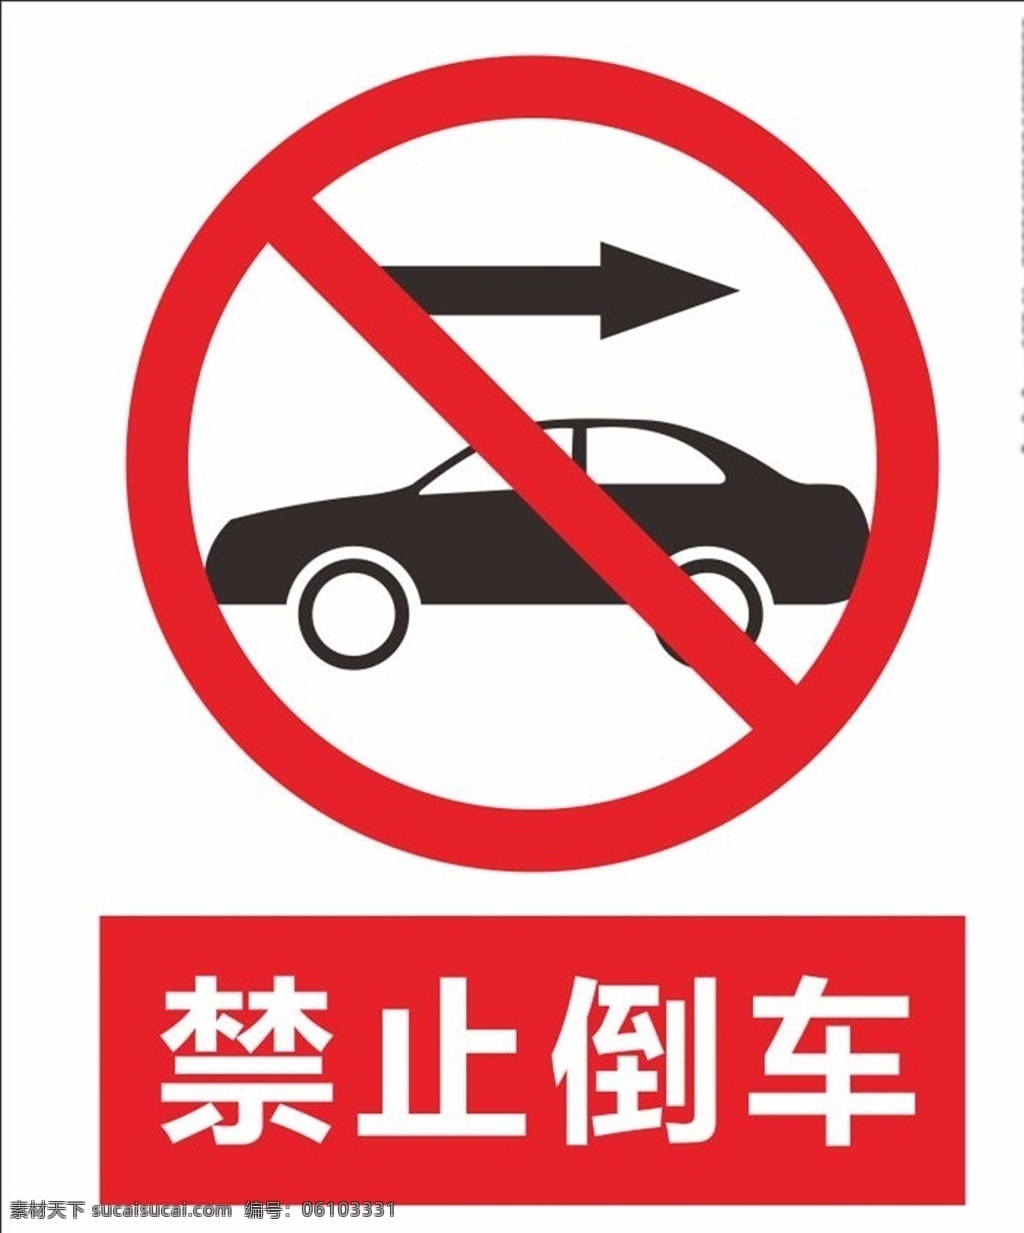 禁止倒车 安全标识 交通标识 标识牌 安全标志 禁止标识 交通安全标识 标志图标 公共标识标志